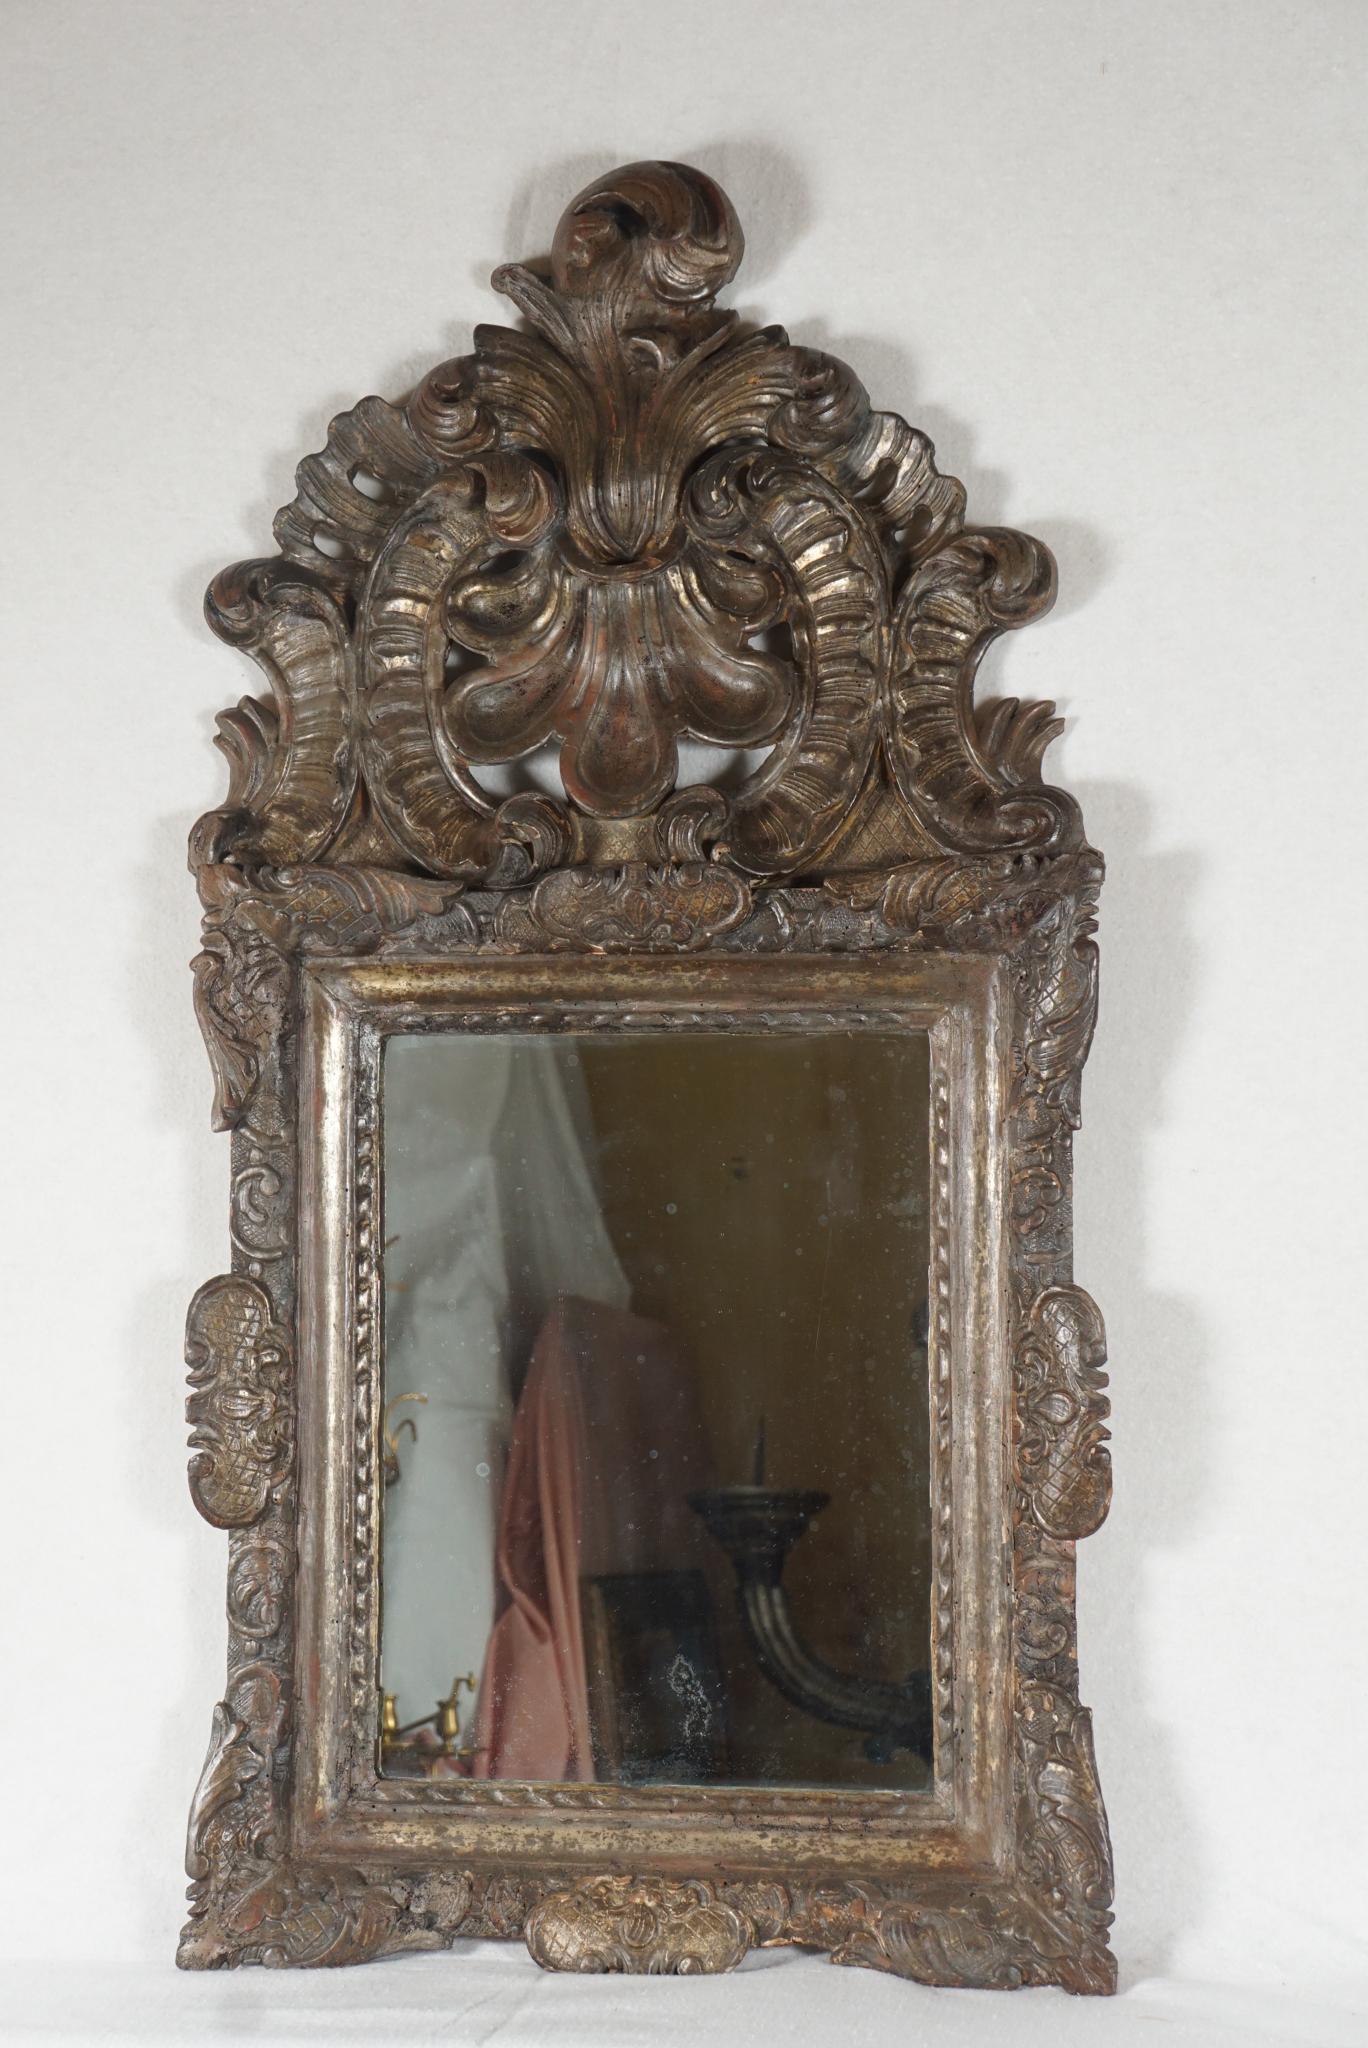 Ce beau miroir ancien datant d'environ 1740 est créé en bois sculpté, gessoïsé et doré à l'argent. Son cadre audacieux et lourd est centré au sommet par une crête ajourée spectaculaire composée de grands éléments sculptés en forme de s et de c, avec